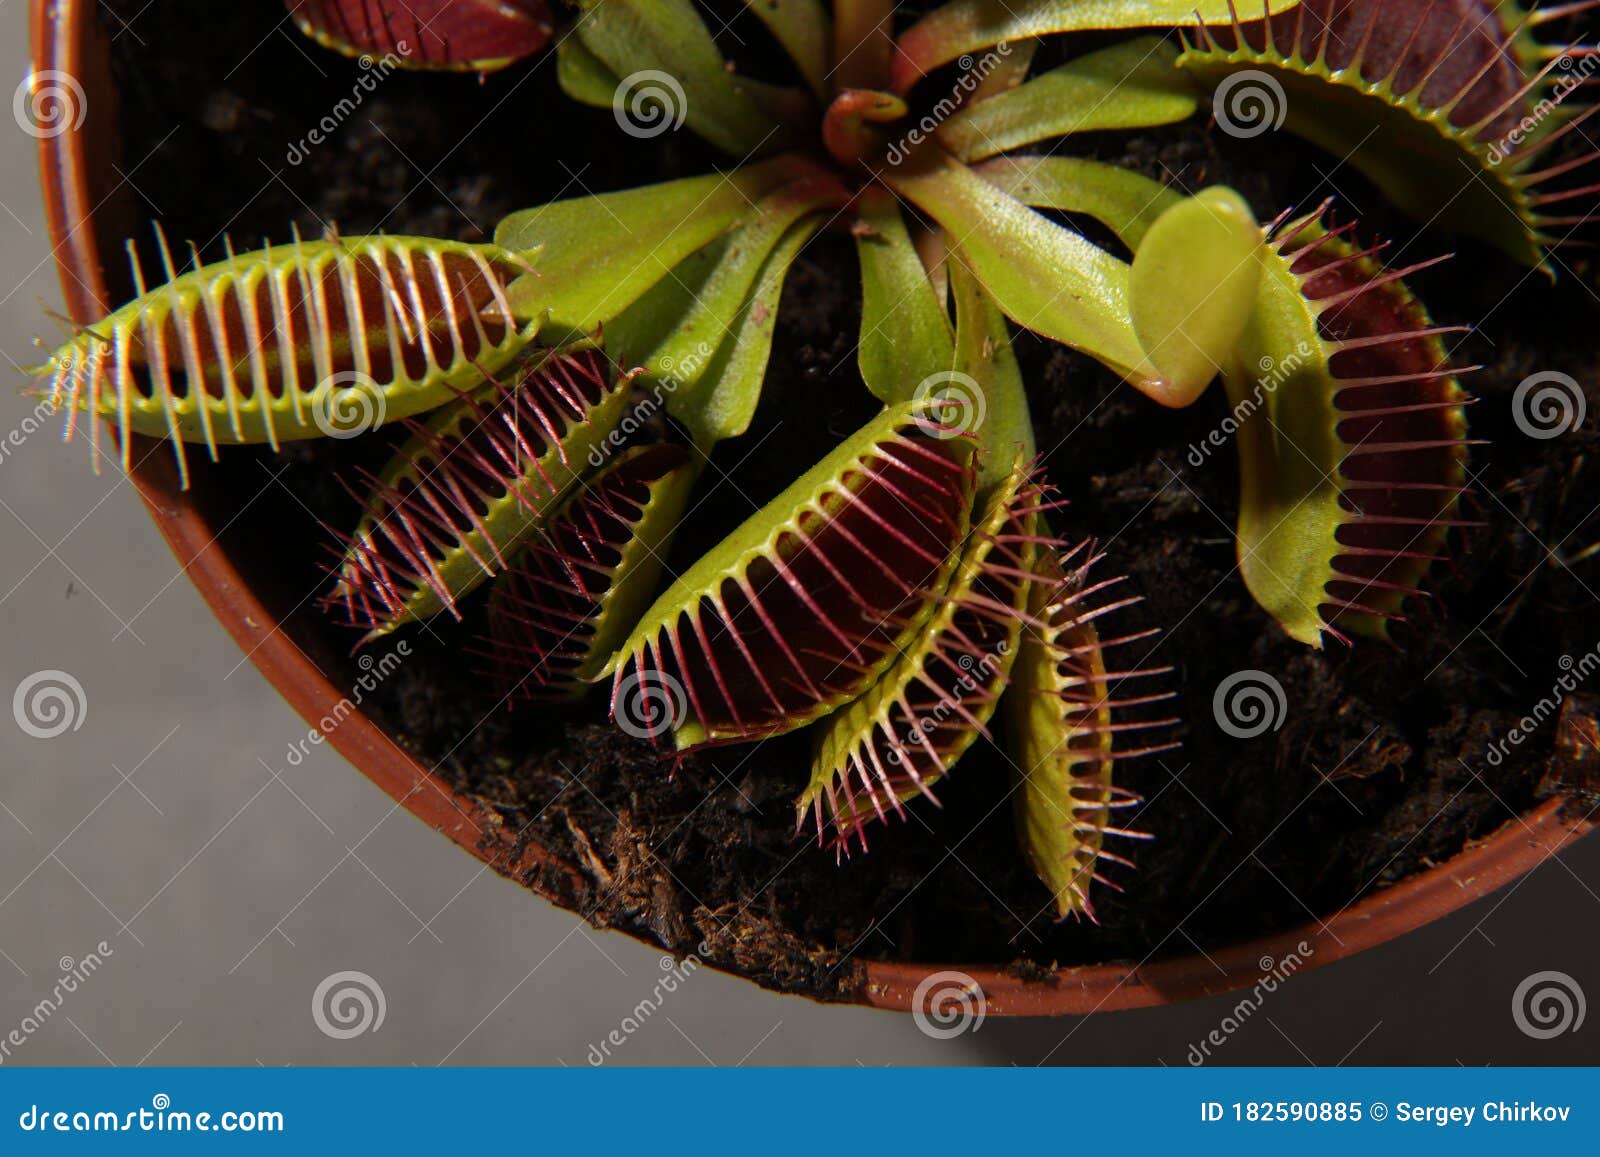 predatory plant dionea venus flytrap close-up